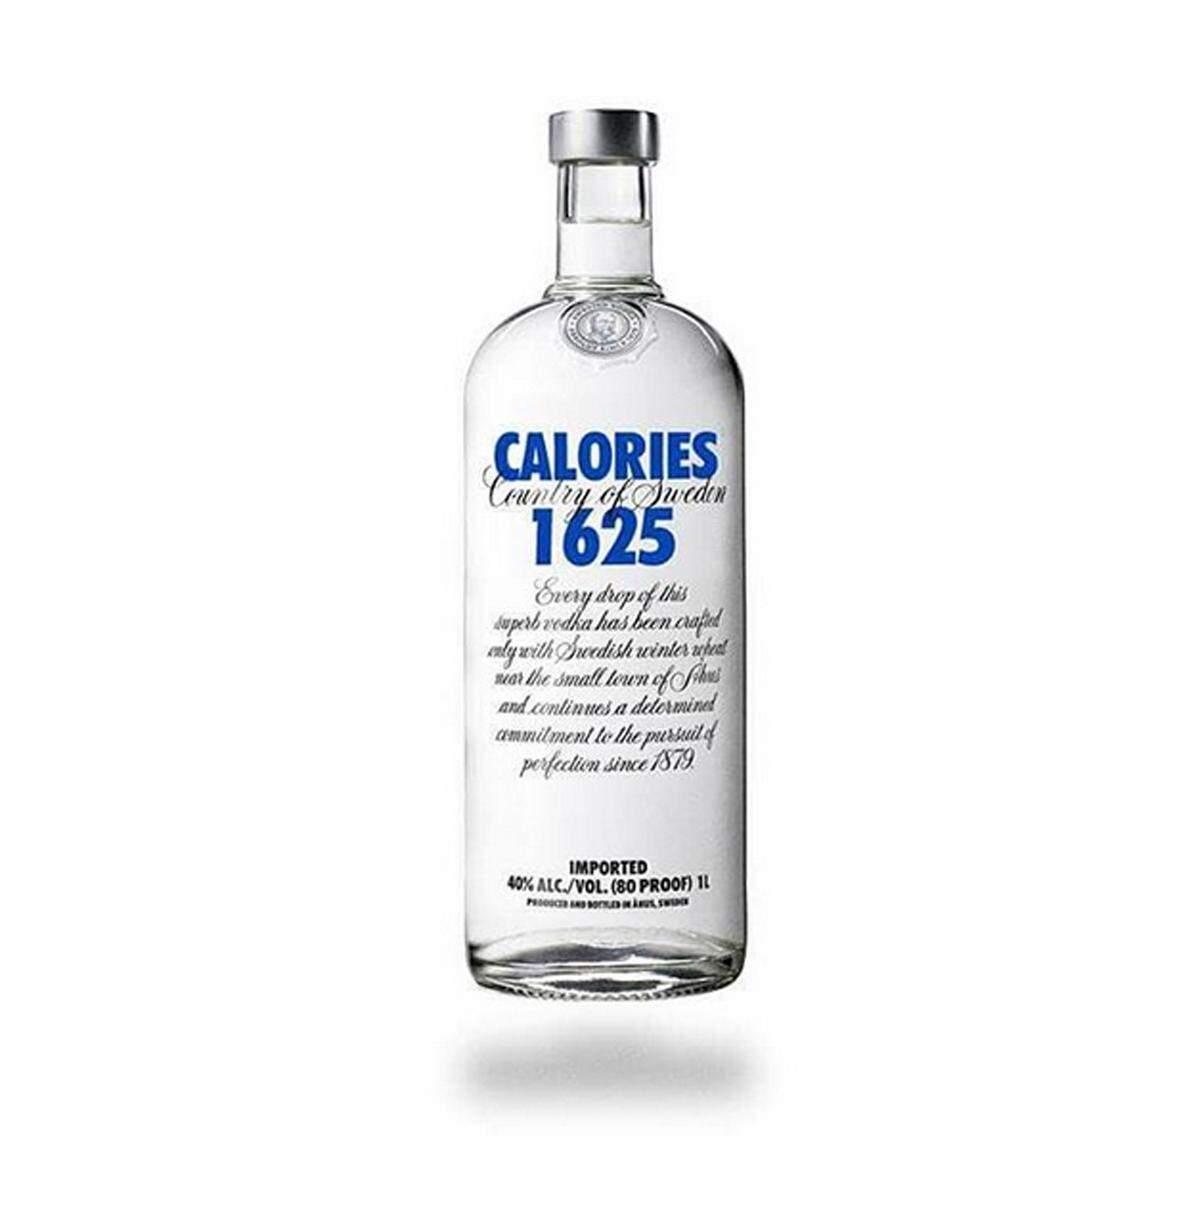 Alkohol ist ebenfalls ein Dickmacher. In einer Flasche Absolut Vodka stecken 1625 Kalorien.